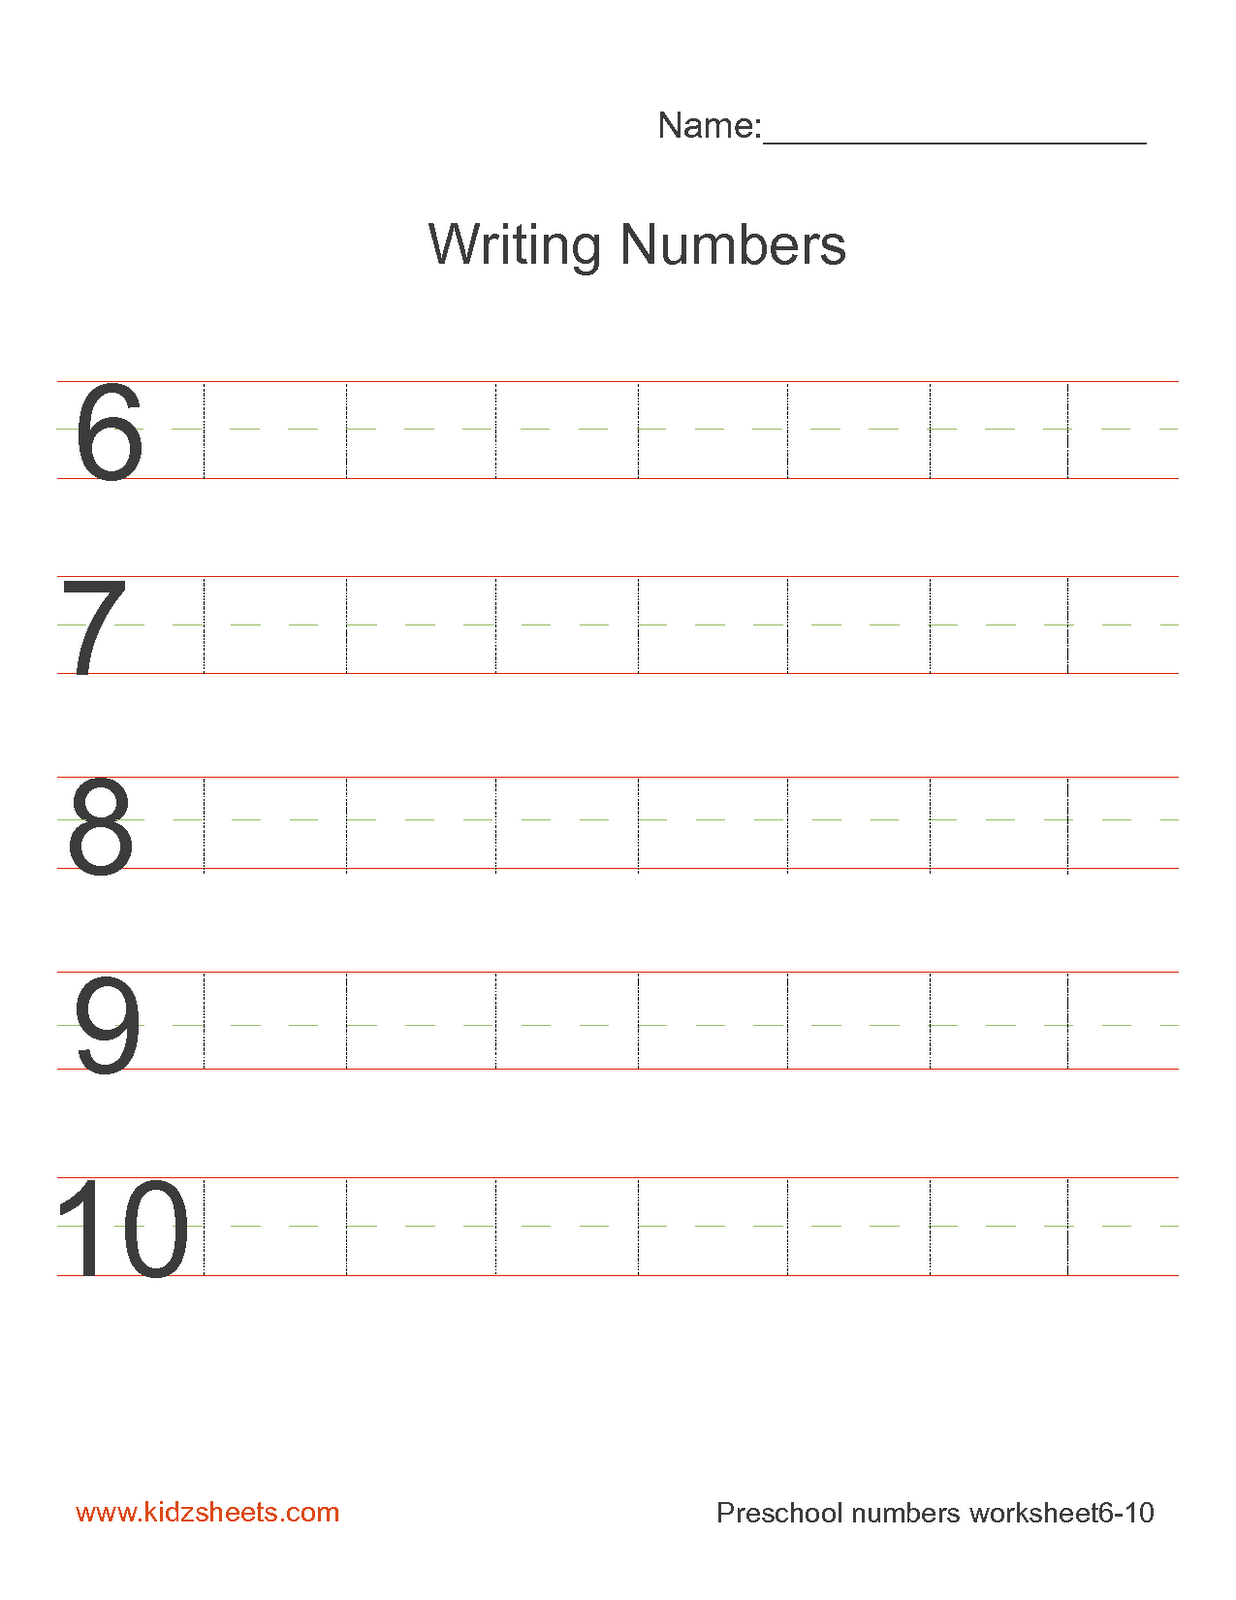 Preschool Writing Number 10 Worksheets Image